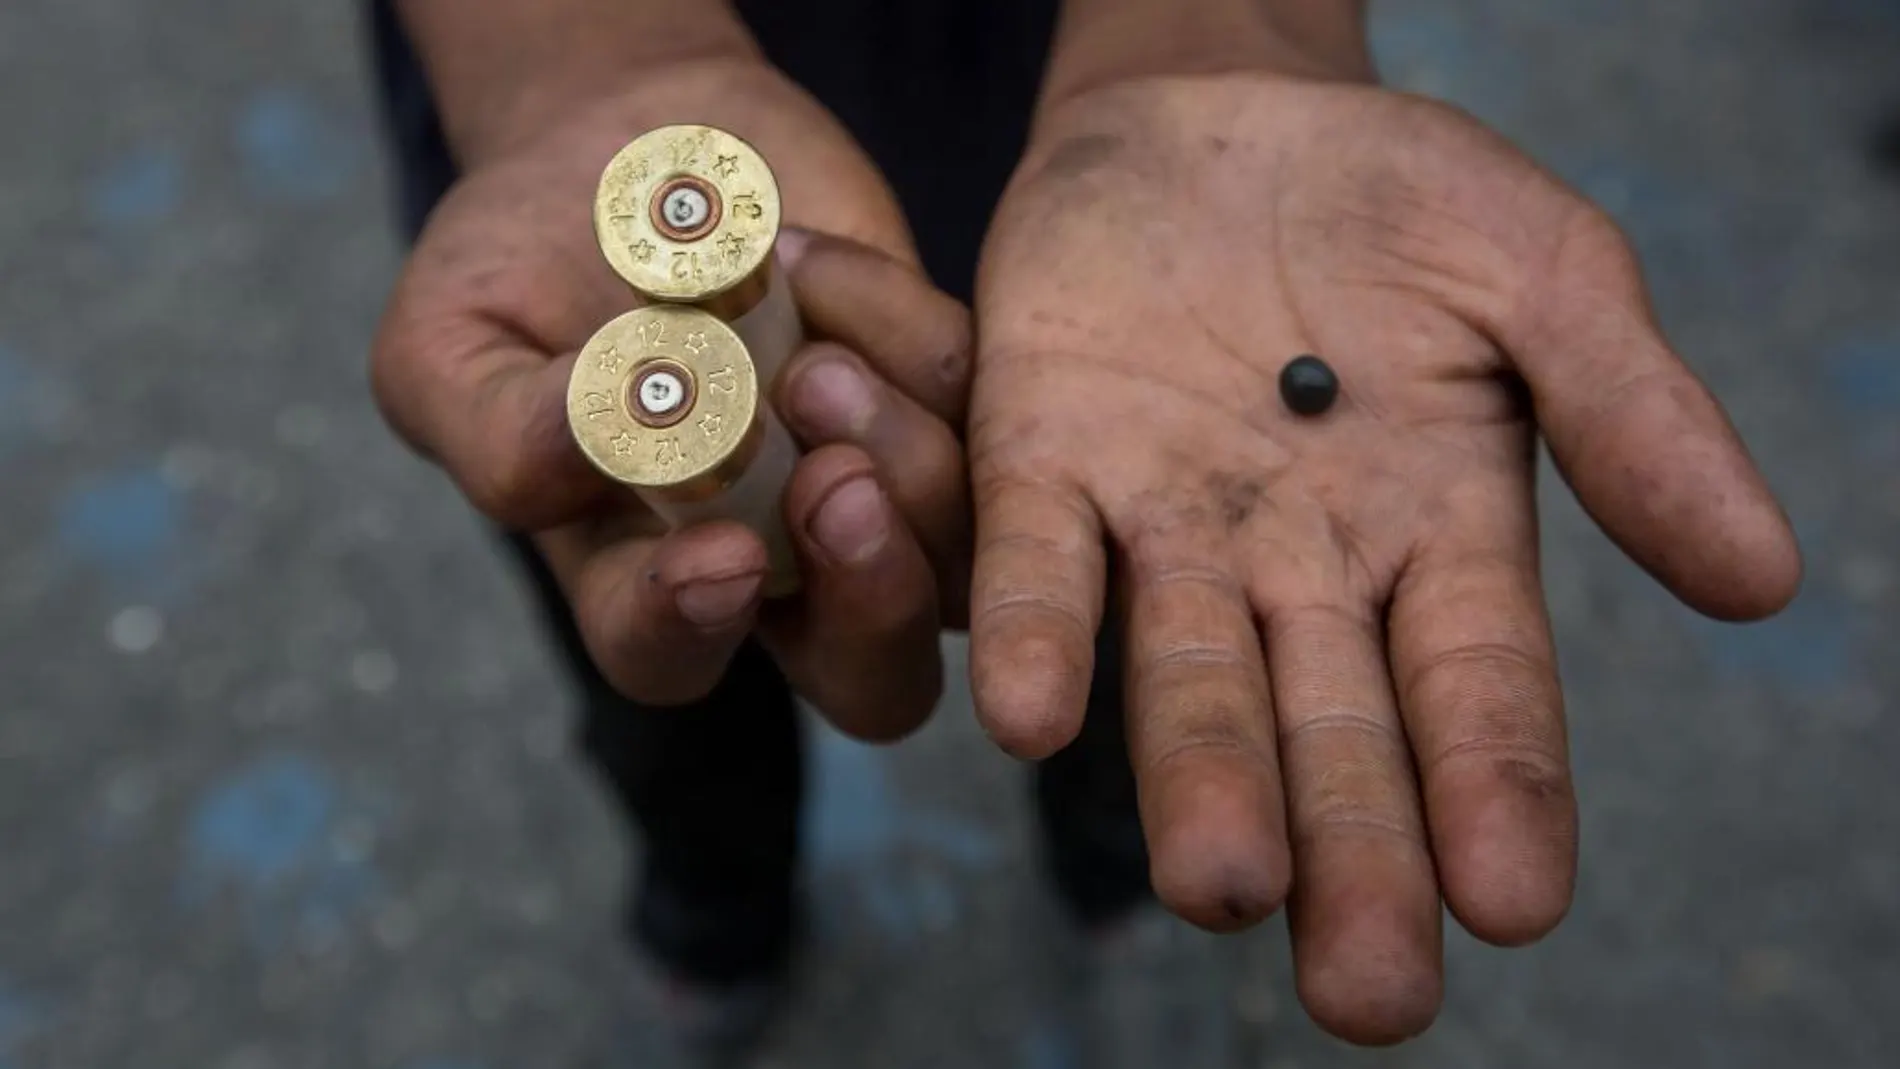 Un manifestante muestra un par de cartuchos de armas de fuego durante manifestación en contra del Gobierno venezolano.